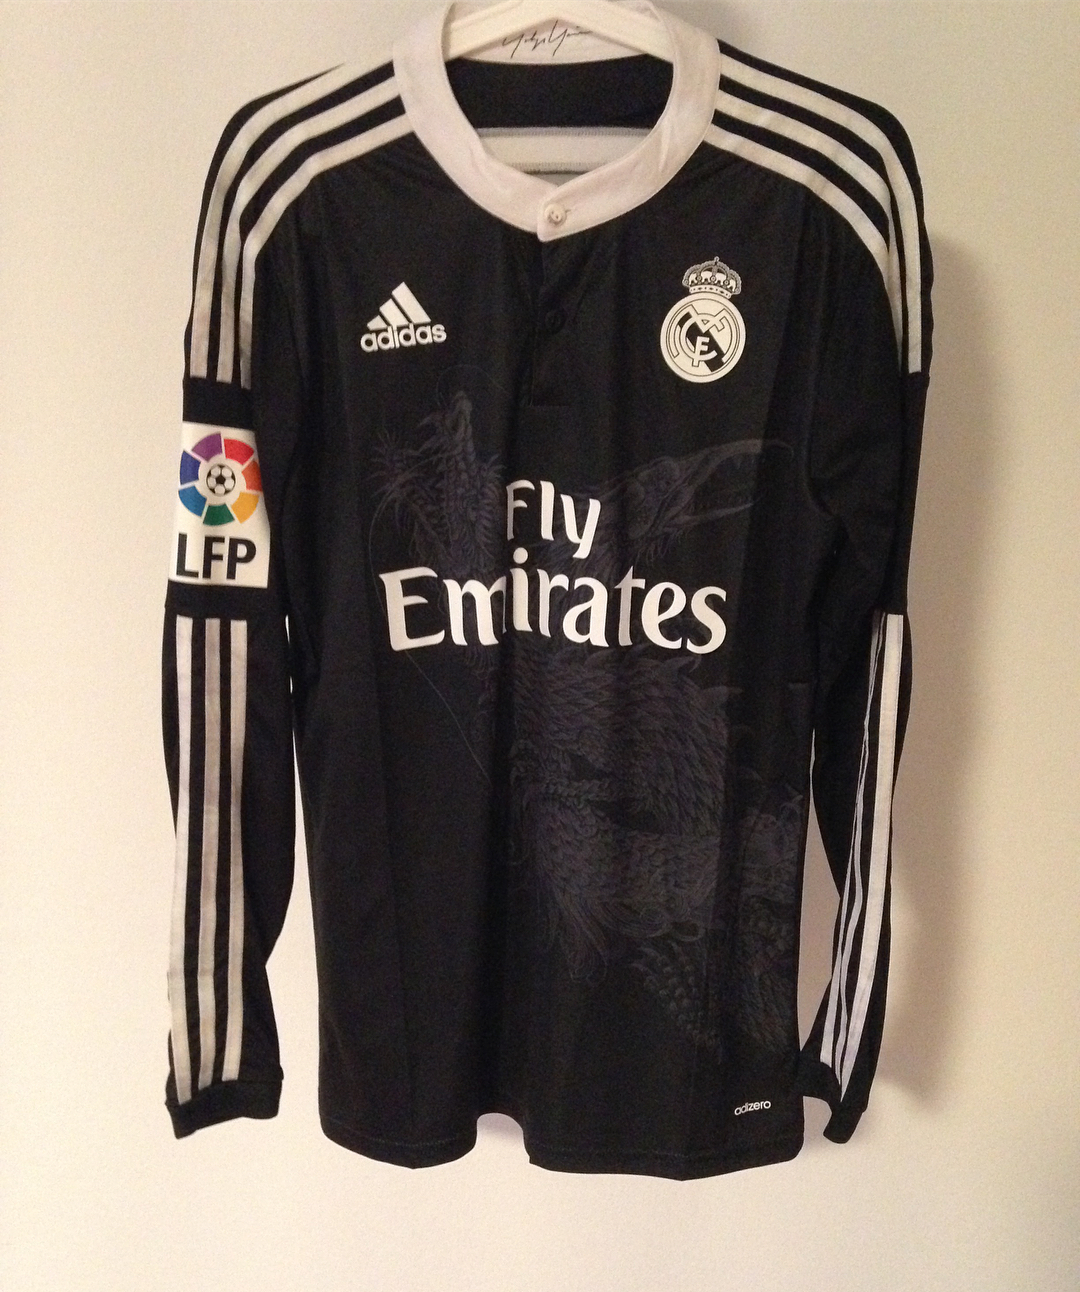 2014-15 Real Madrid Black Long sleeves Shirt Retro Jerseys Football Soccer 